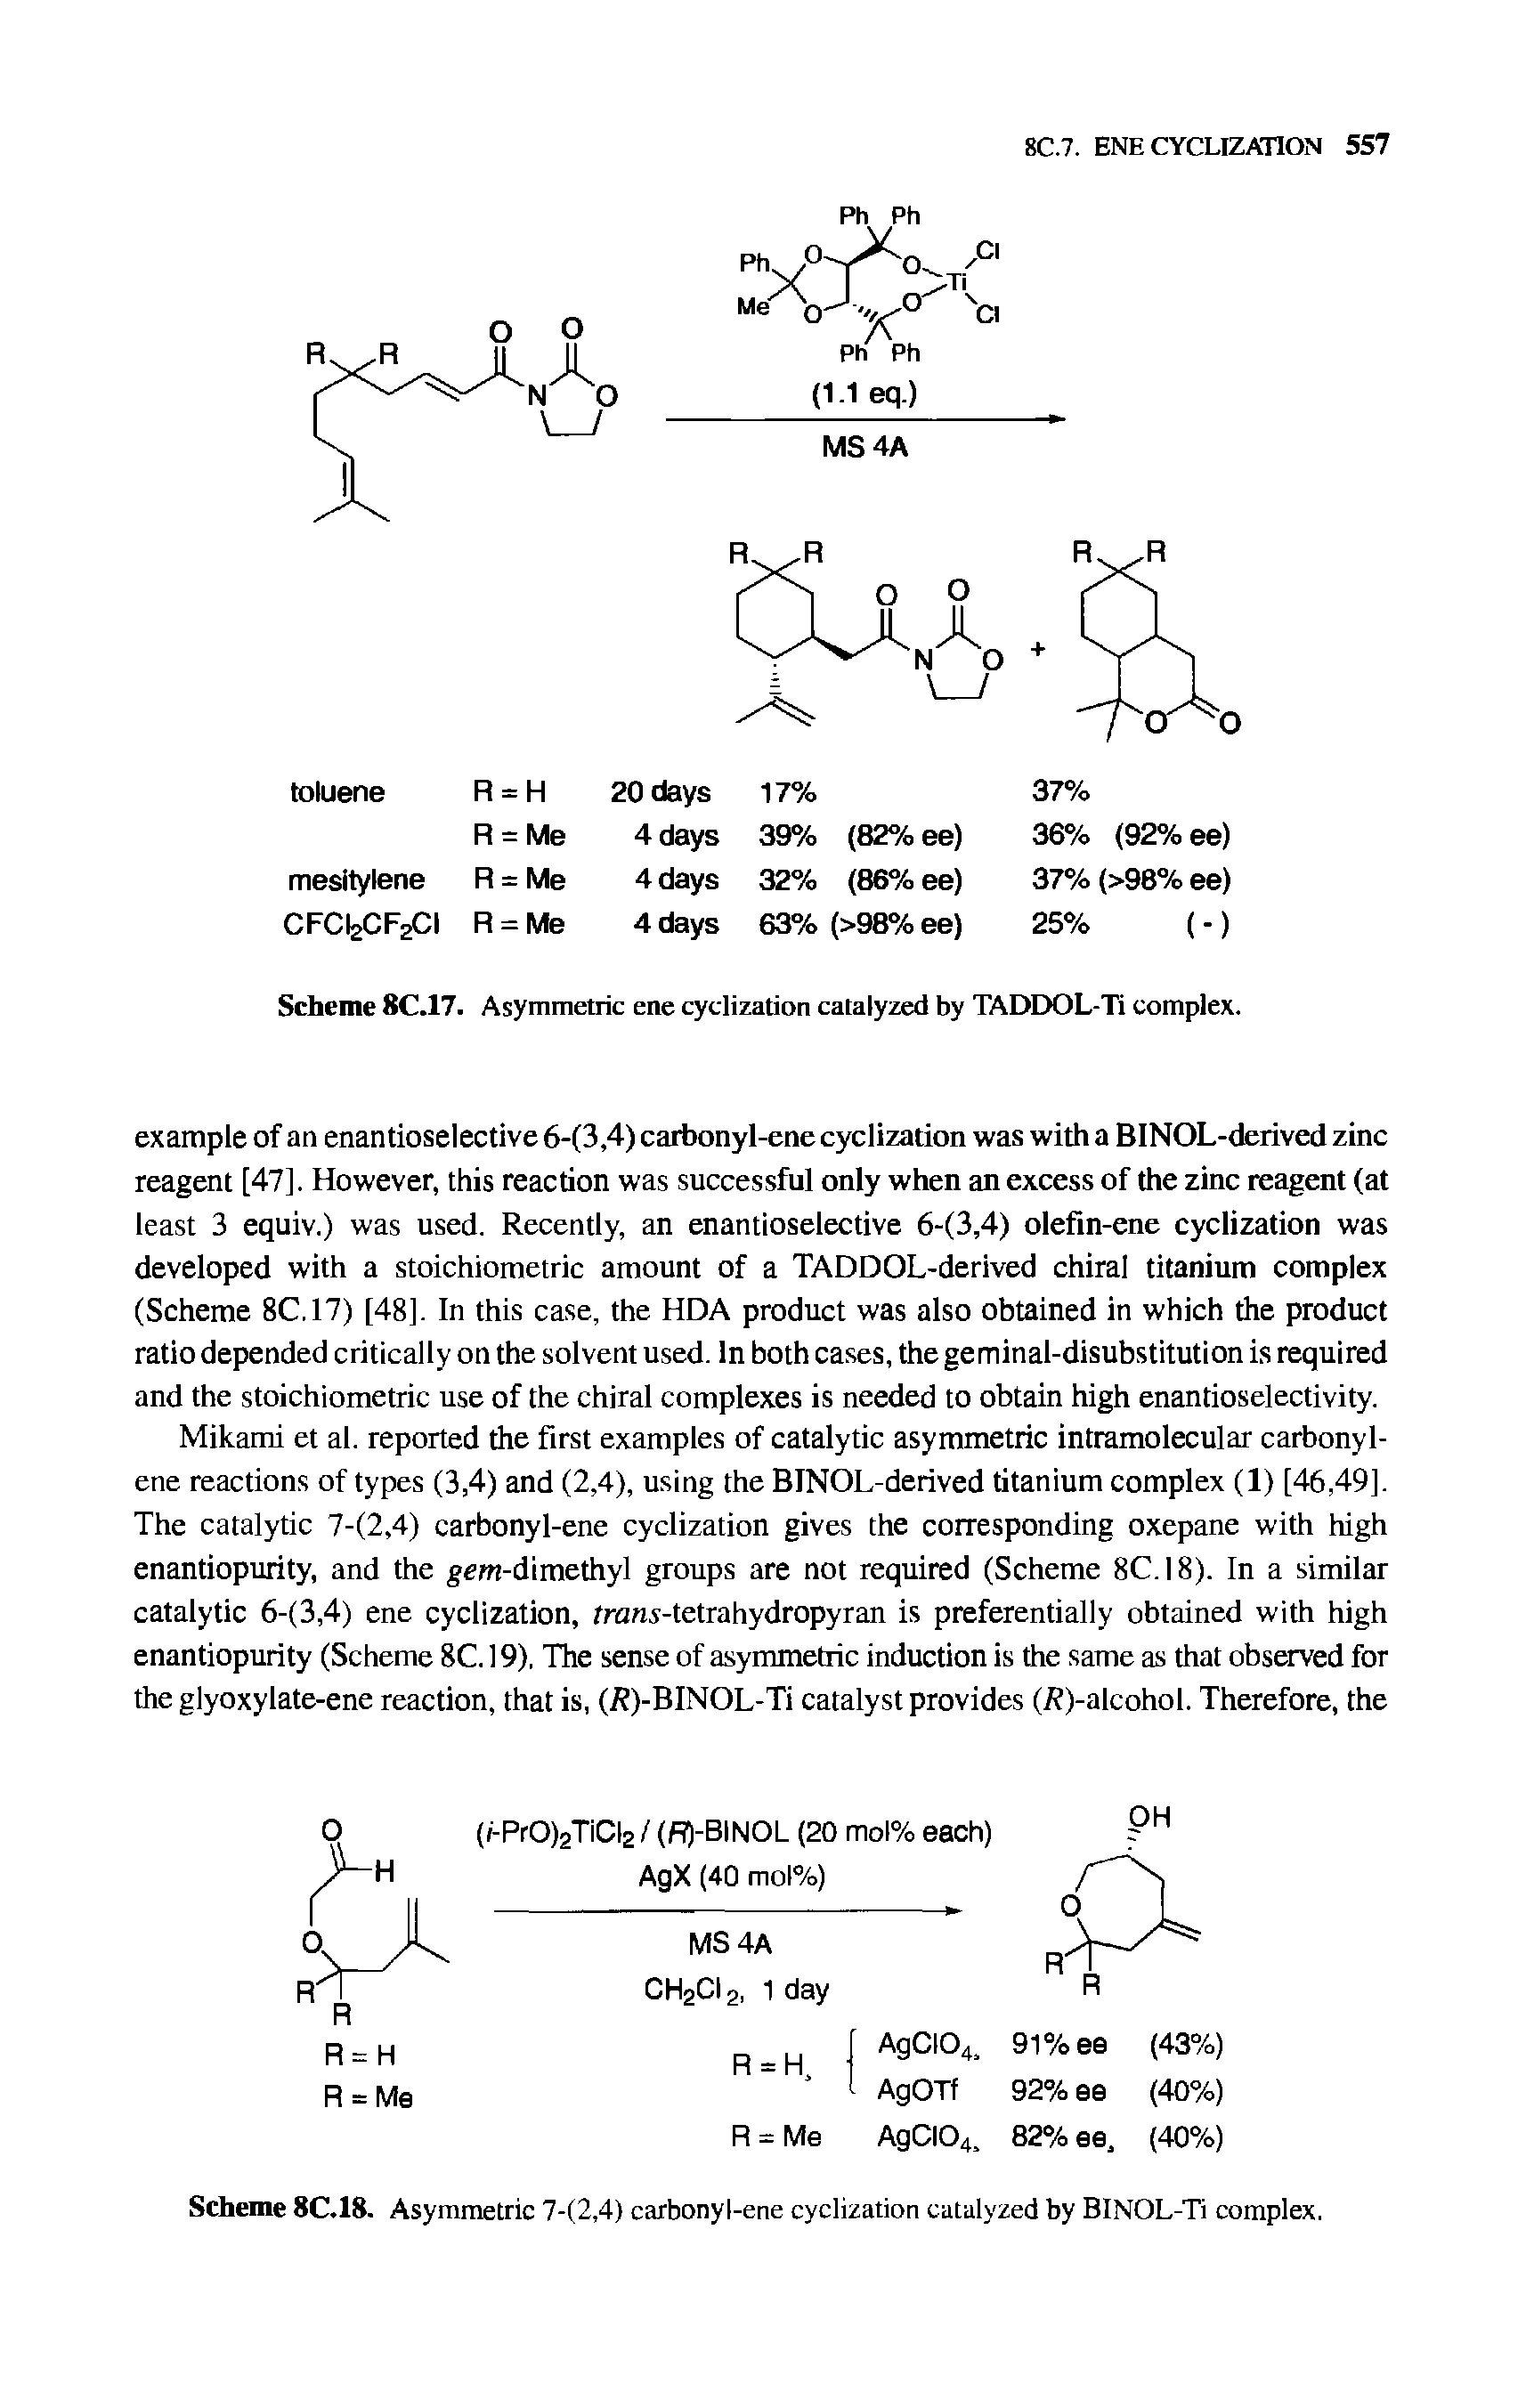 Scheme 8C.18. Asymmetric 7-(2,4) carbonyl-ene cyclization catalyzed by BINOL-Ti complex.